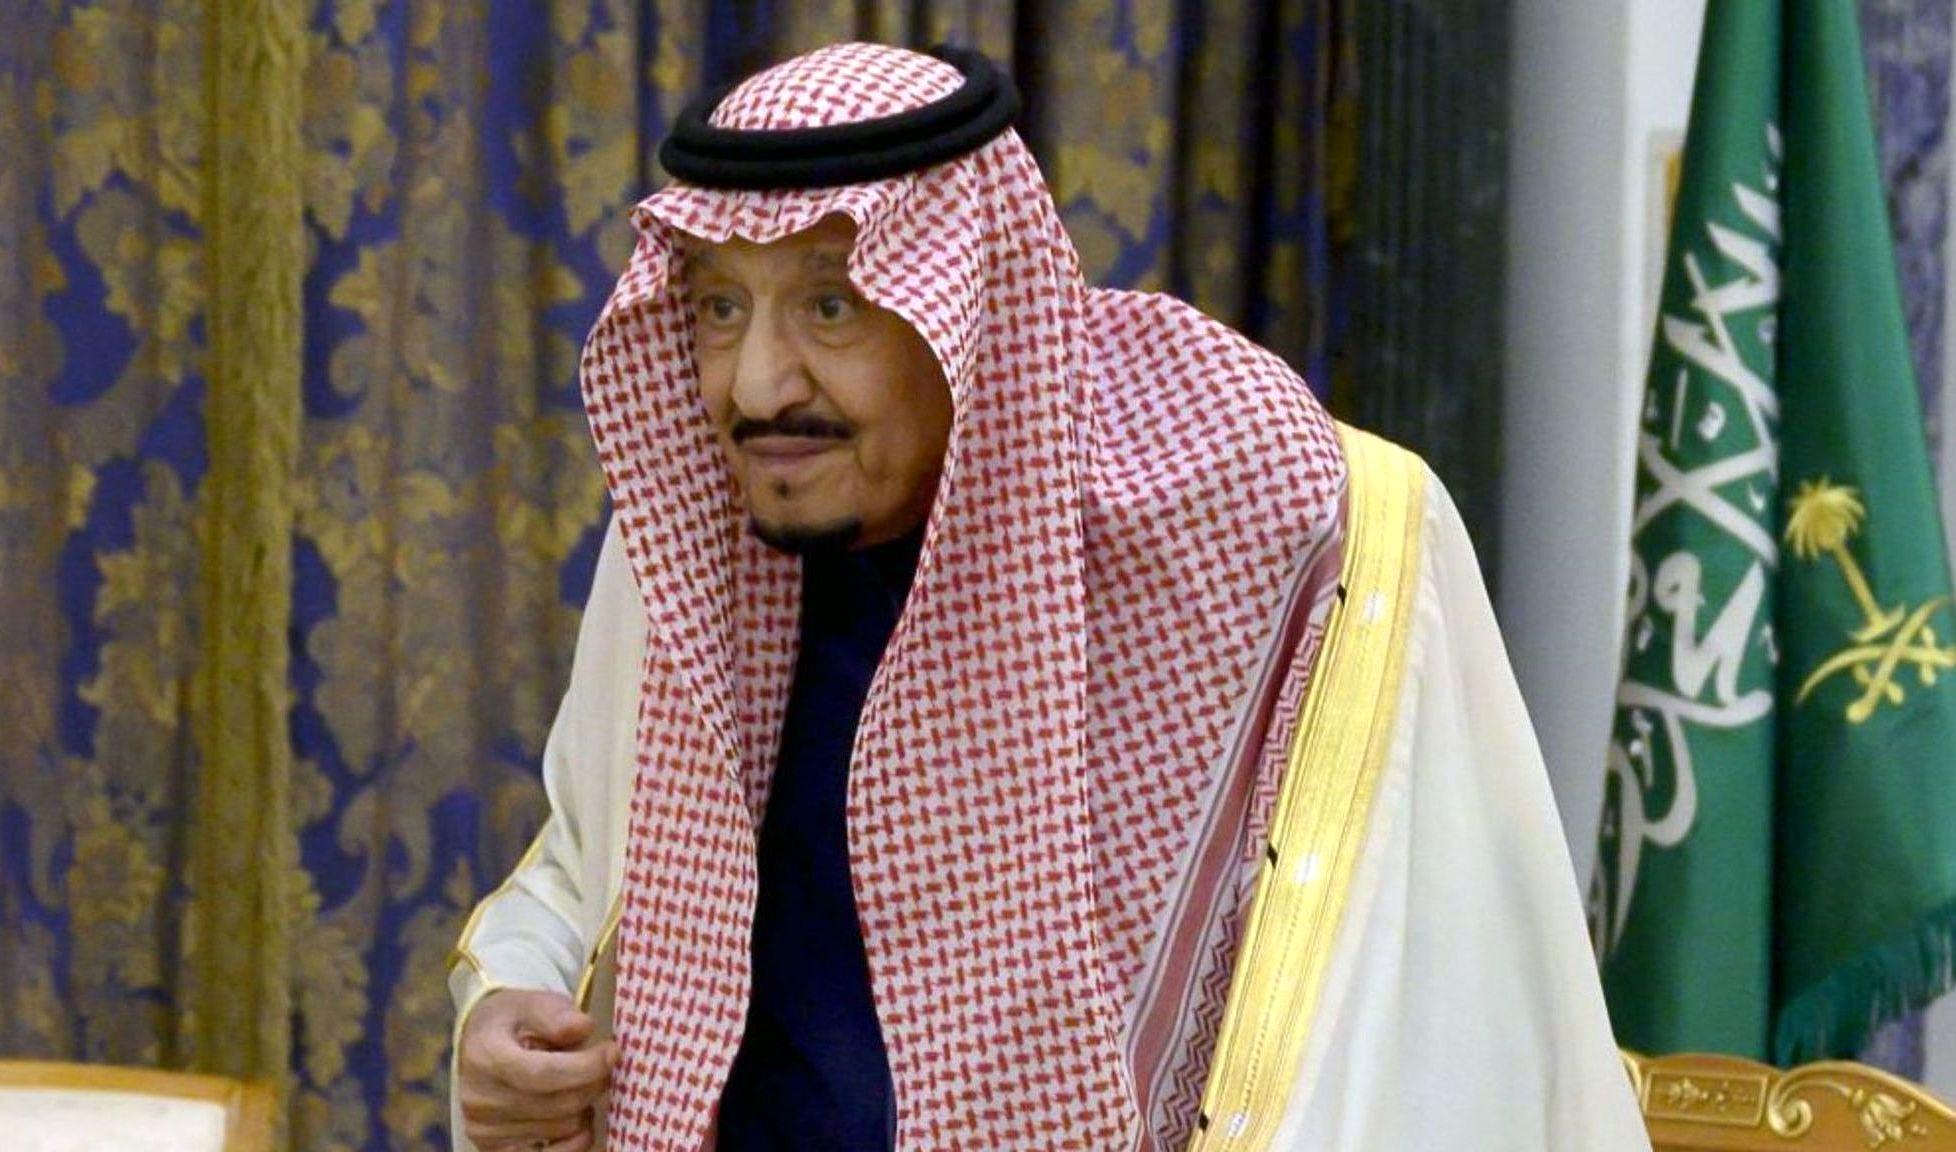 حال پادشاه خوب نیست| شایعات درباره وخیم شدن وضعیت جسمانی این رهبر عربی